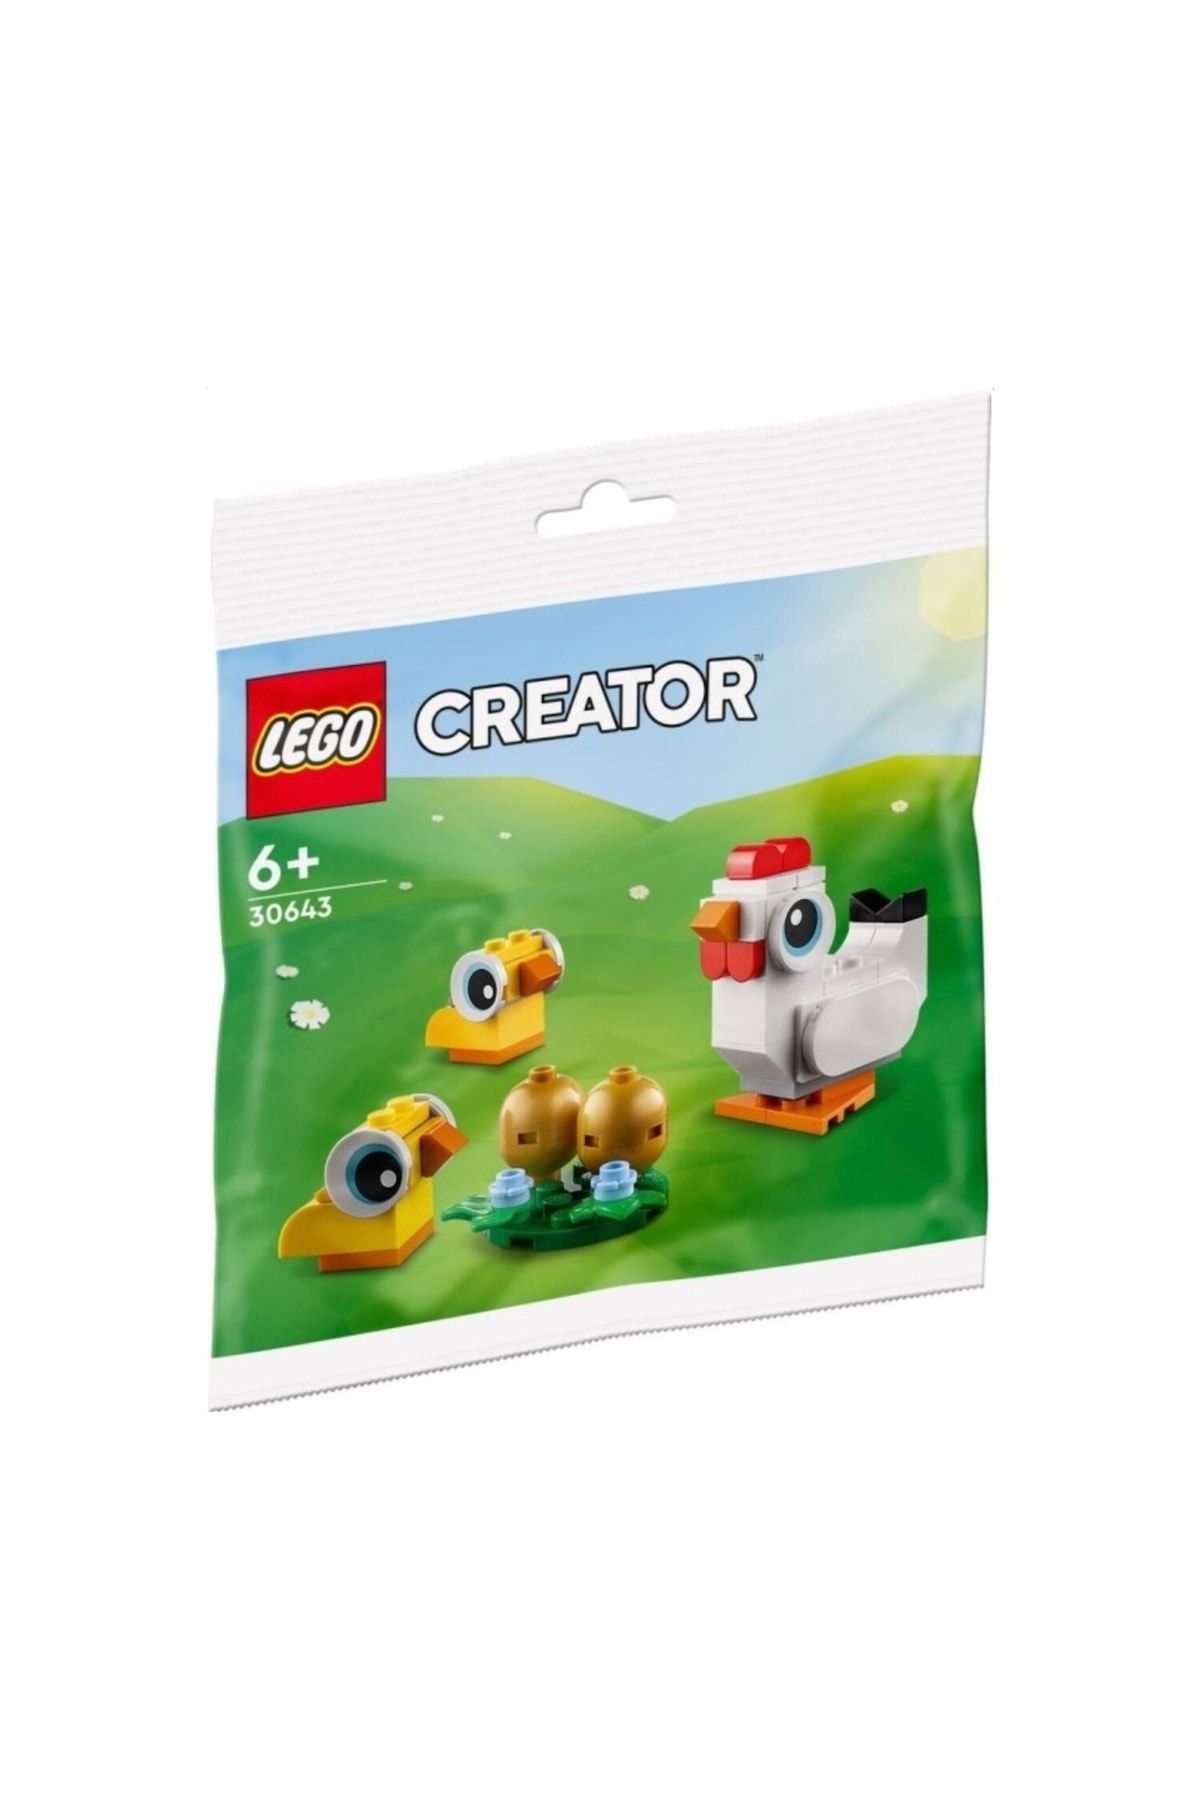 LEGO Creator 30643 Easter Chicks Polybag (61 قطعه)